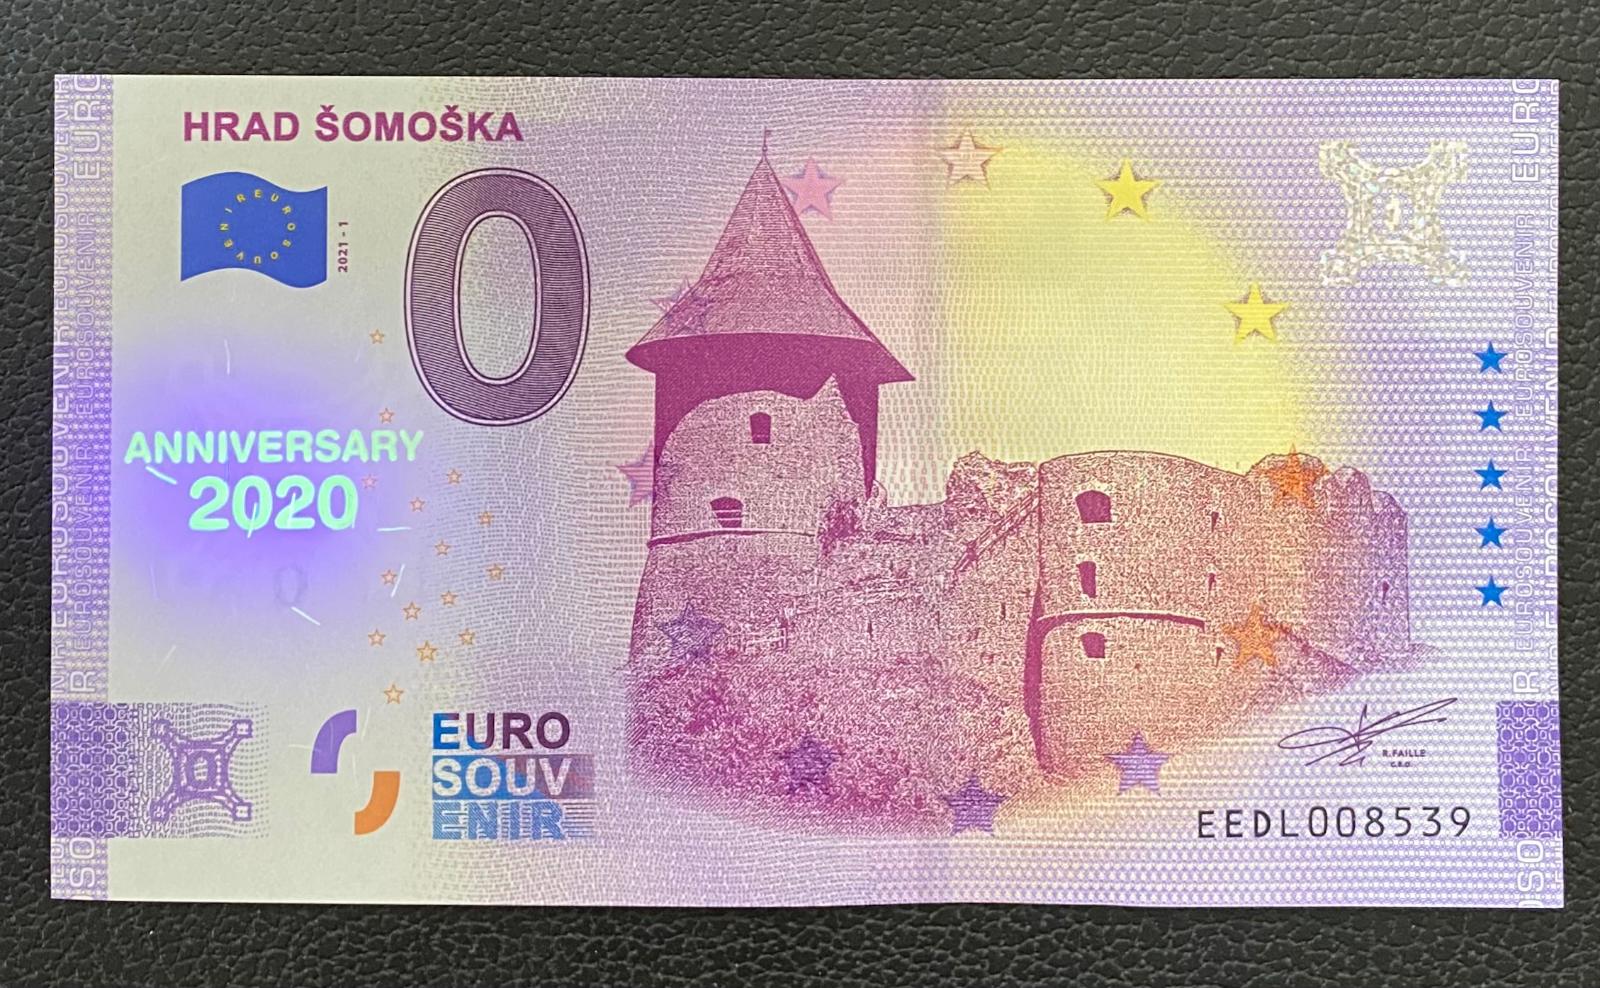 0 Euro Souvenir HRAD ŠOMOŠKA 2021 [ANNIVERSARY] - Zberateľstvo